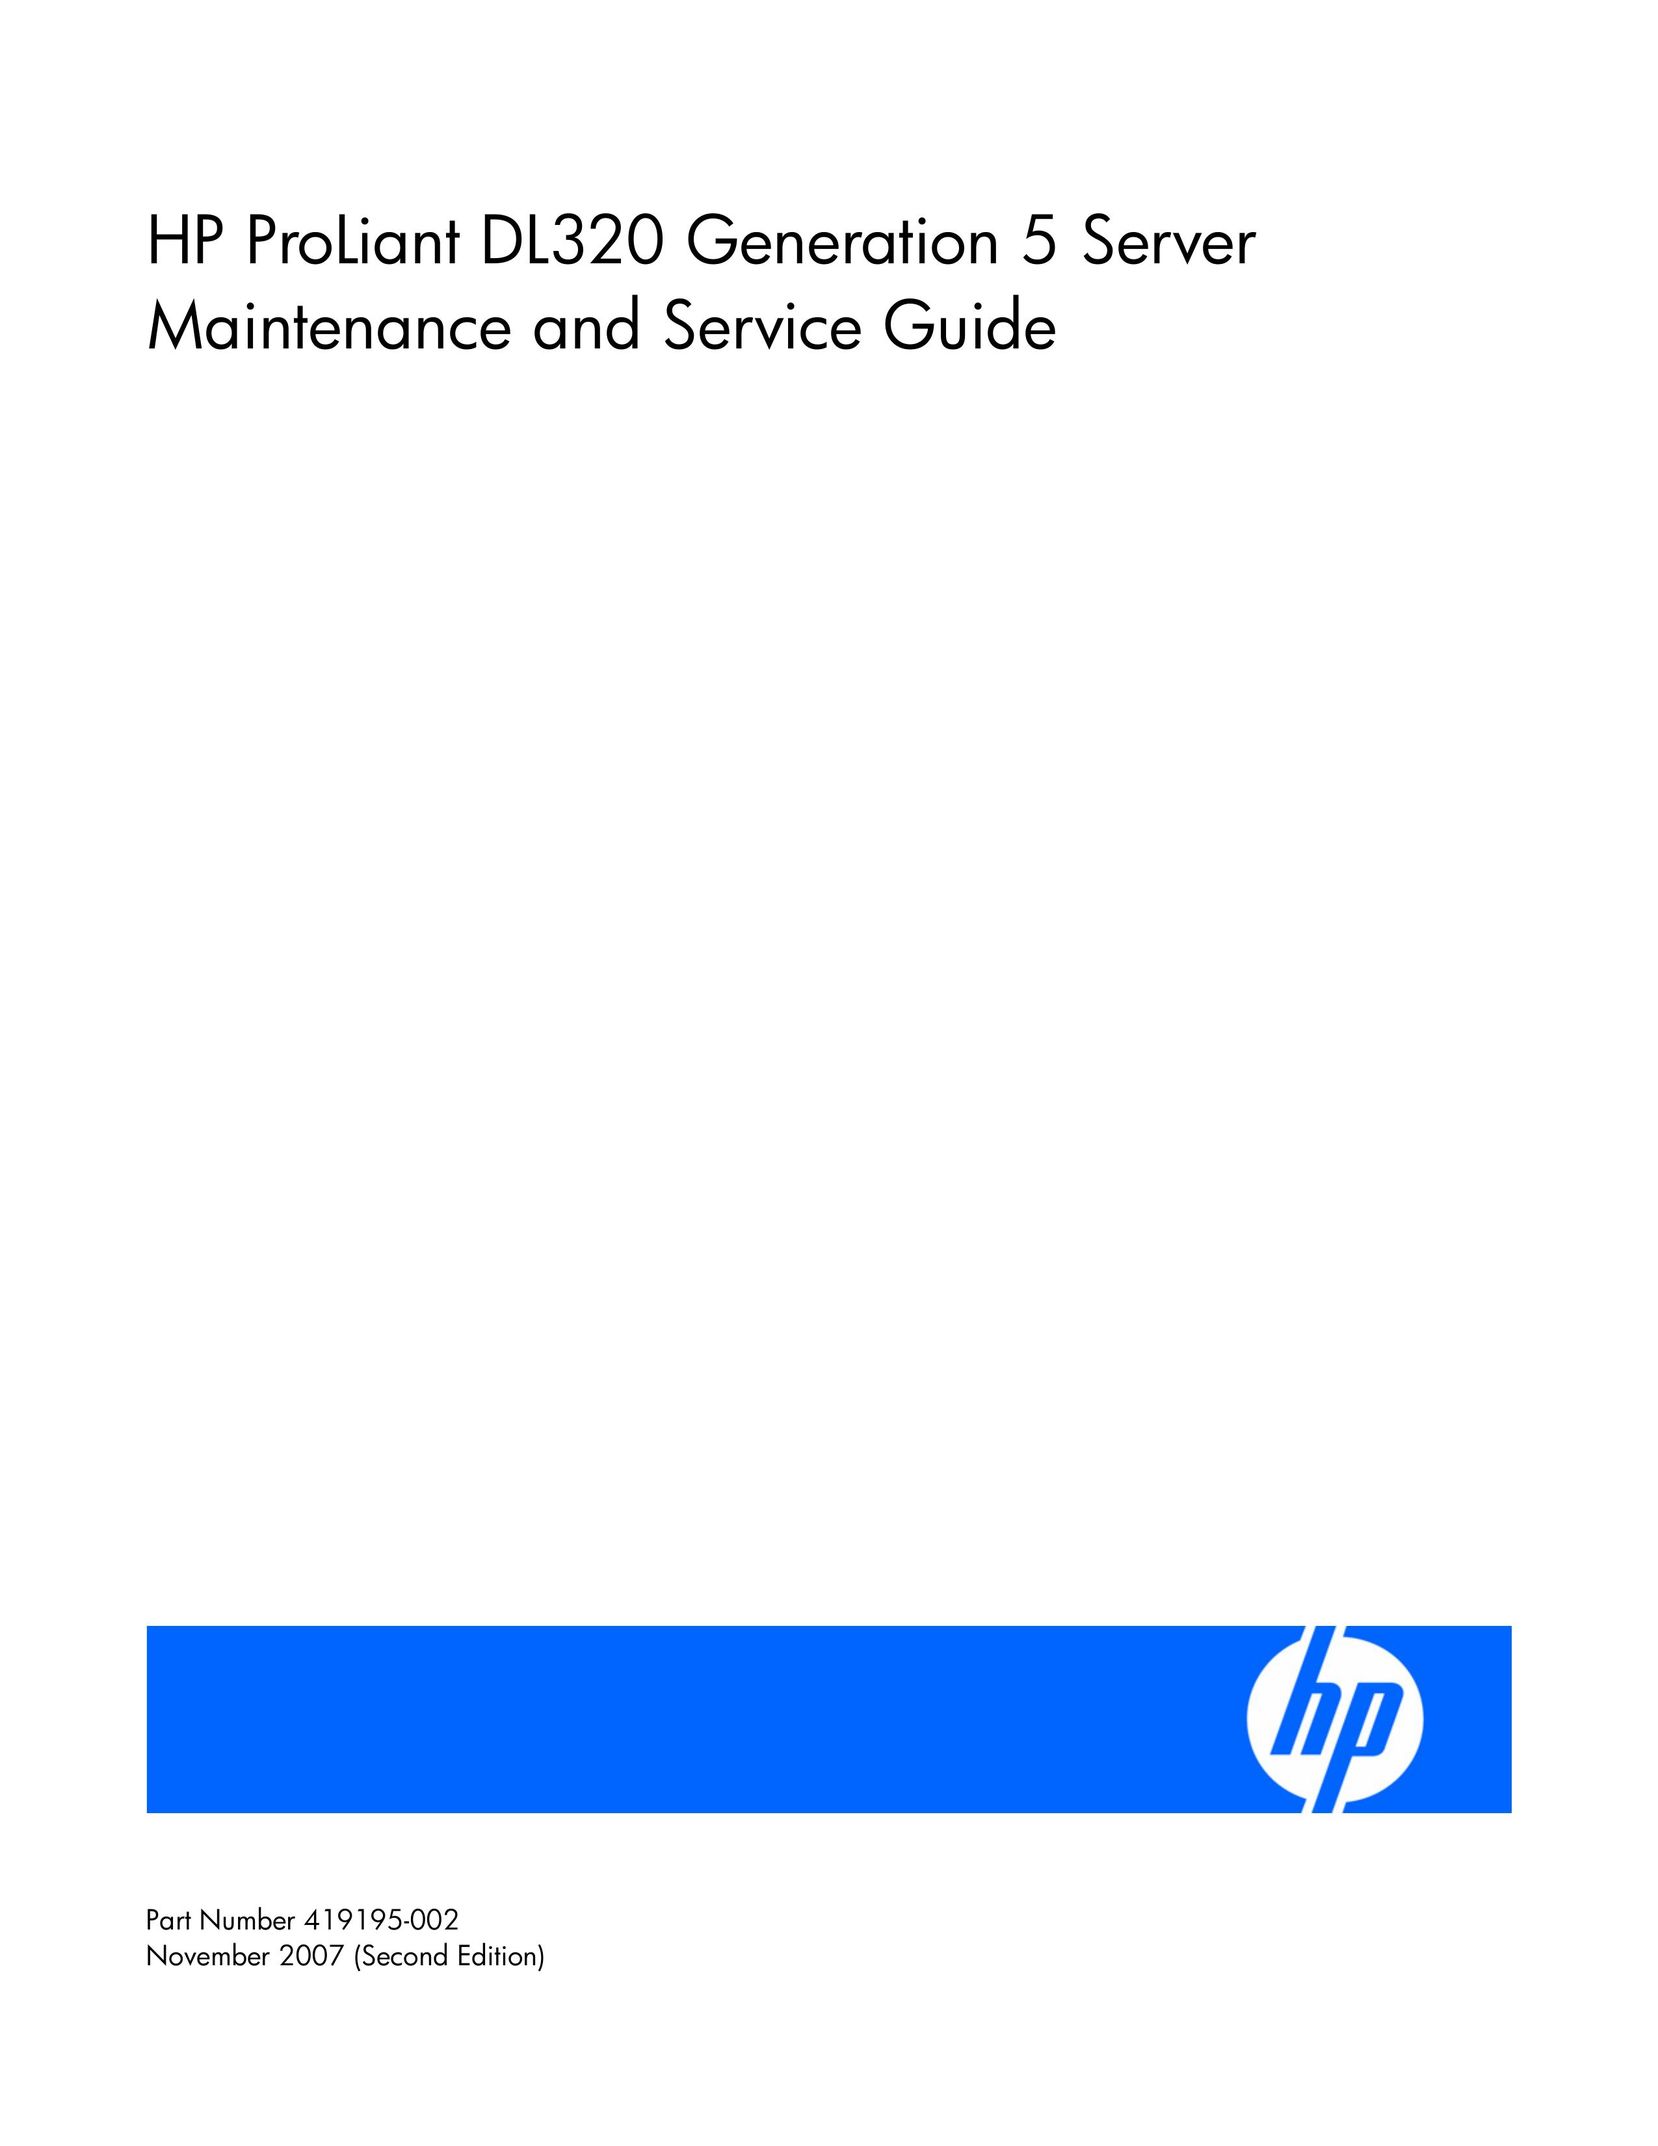 HP (Hewlett-Packard) 419195-002 Server User Manual